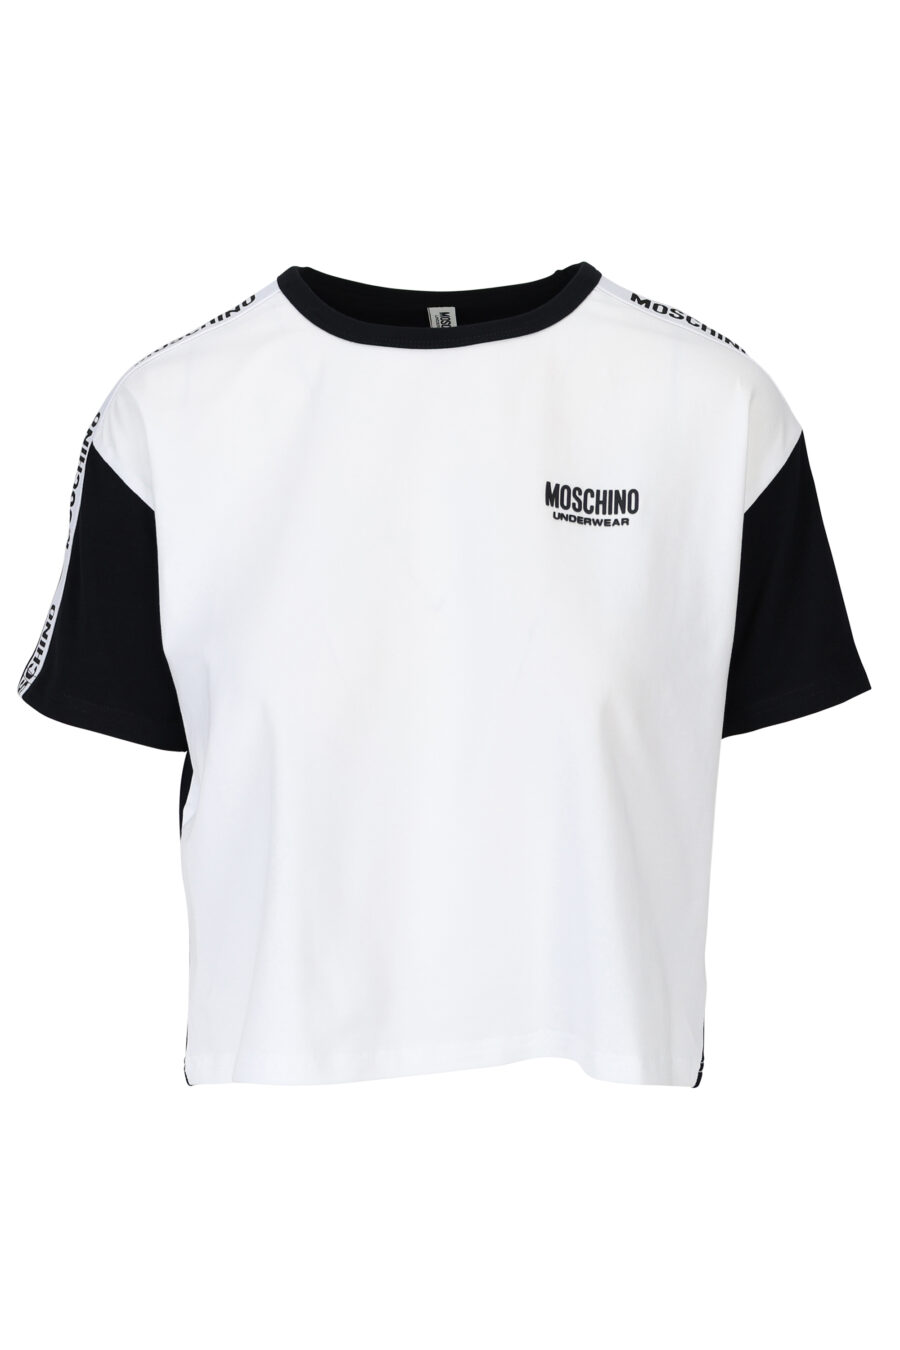 Weißes T-Shirt mit schwarzen Ärmeln und Rücken und Schleifenlogo - 667113062037